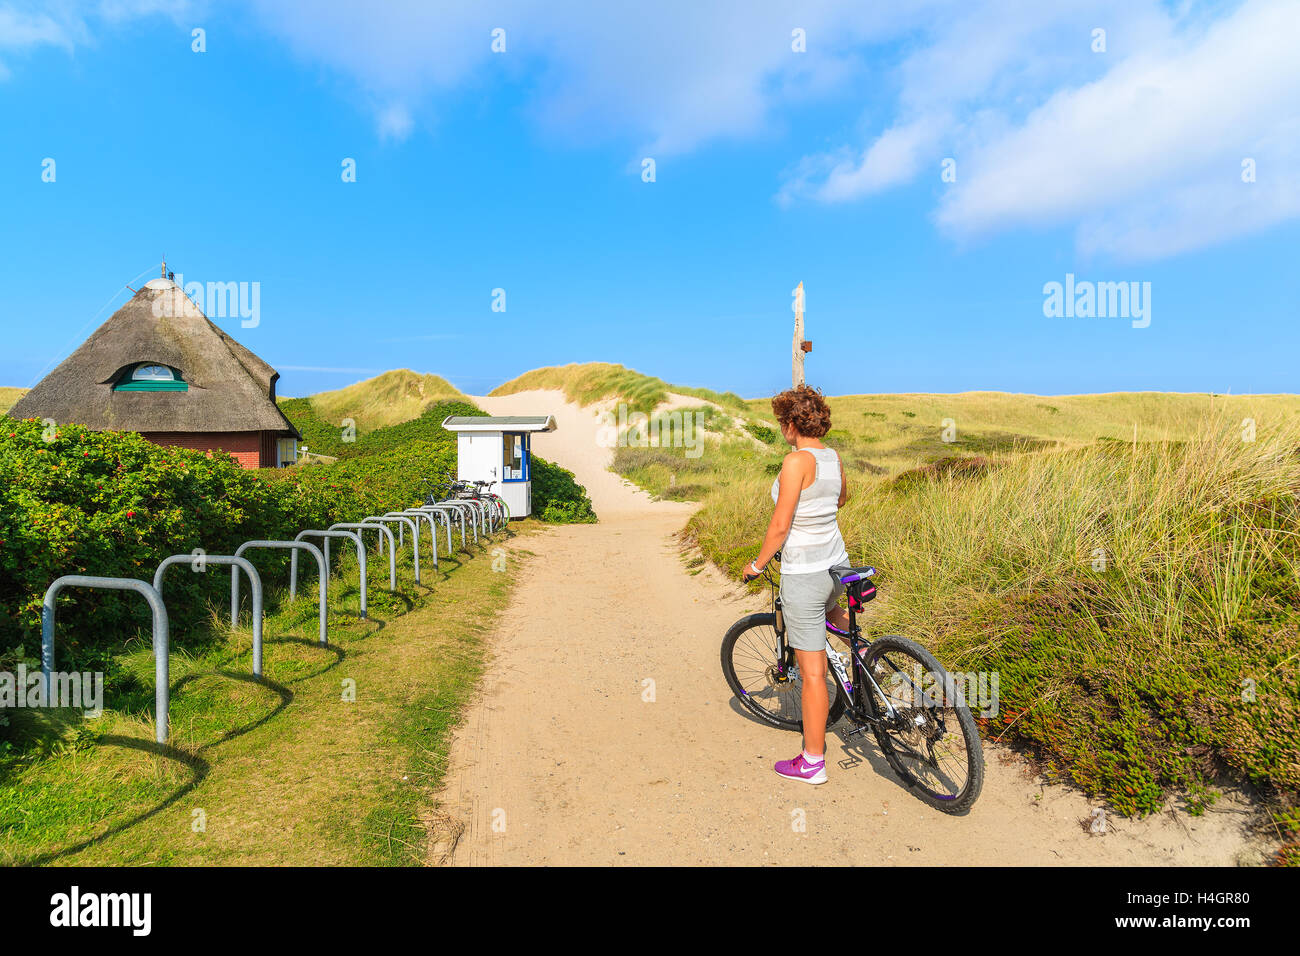 Insel SYLT, Deutschland - SEP 6, 2016: junge Frau auf einem Fahrrad während der Fahrt entlang der Küste von Sylt Insel, Deutschland. Stockfoto